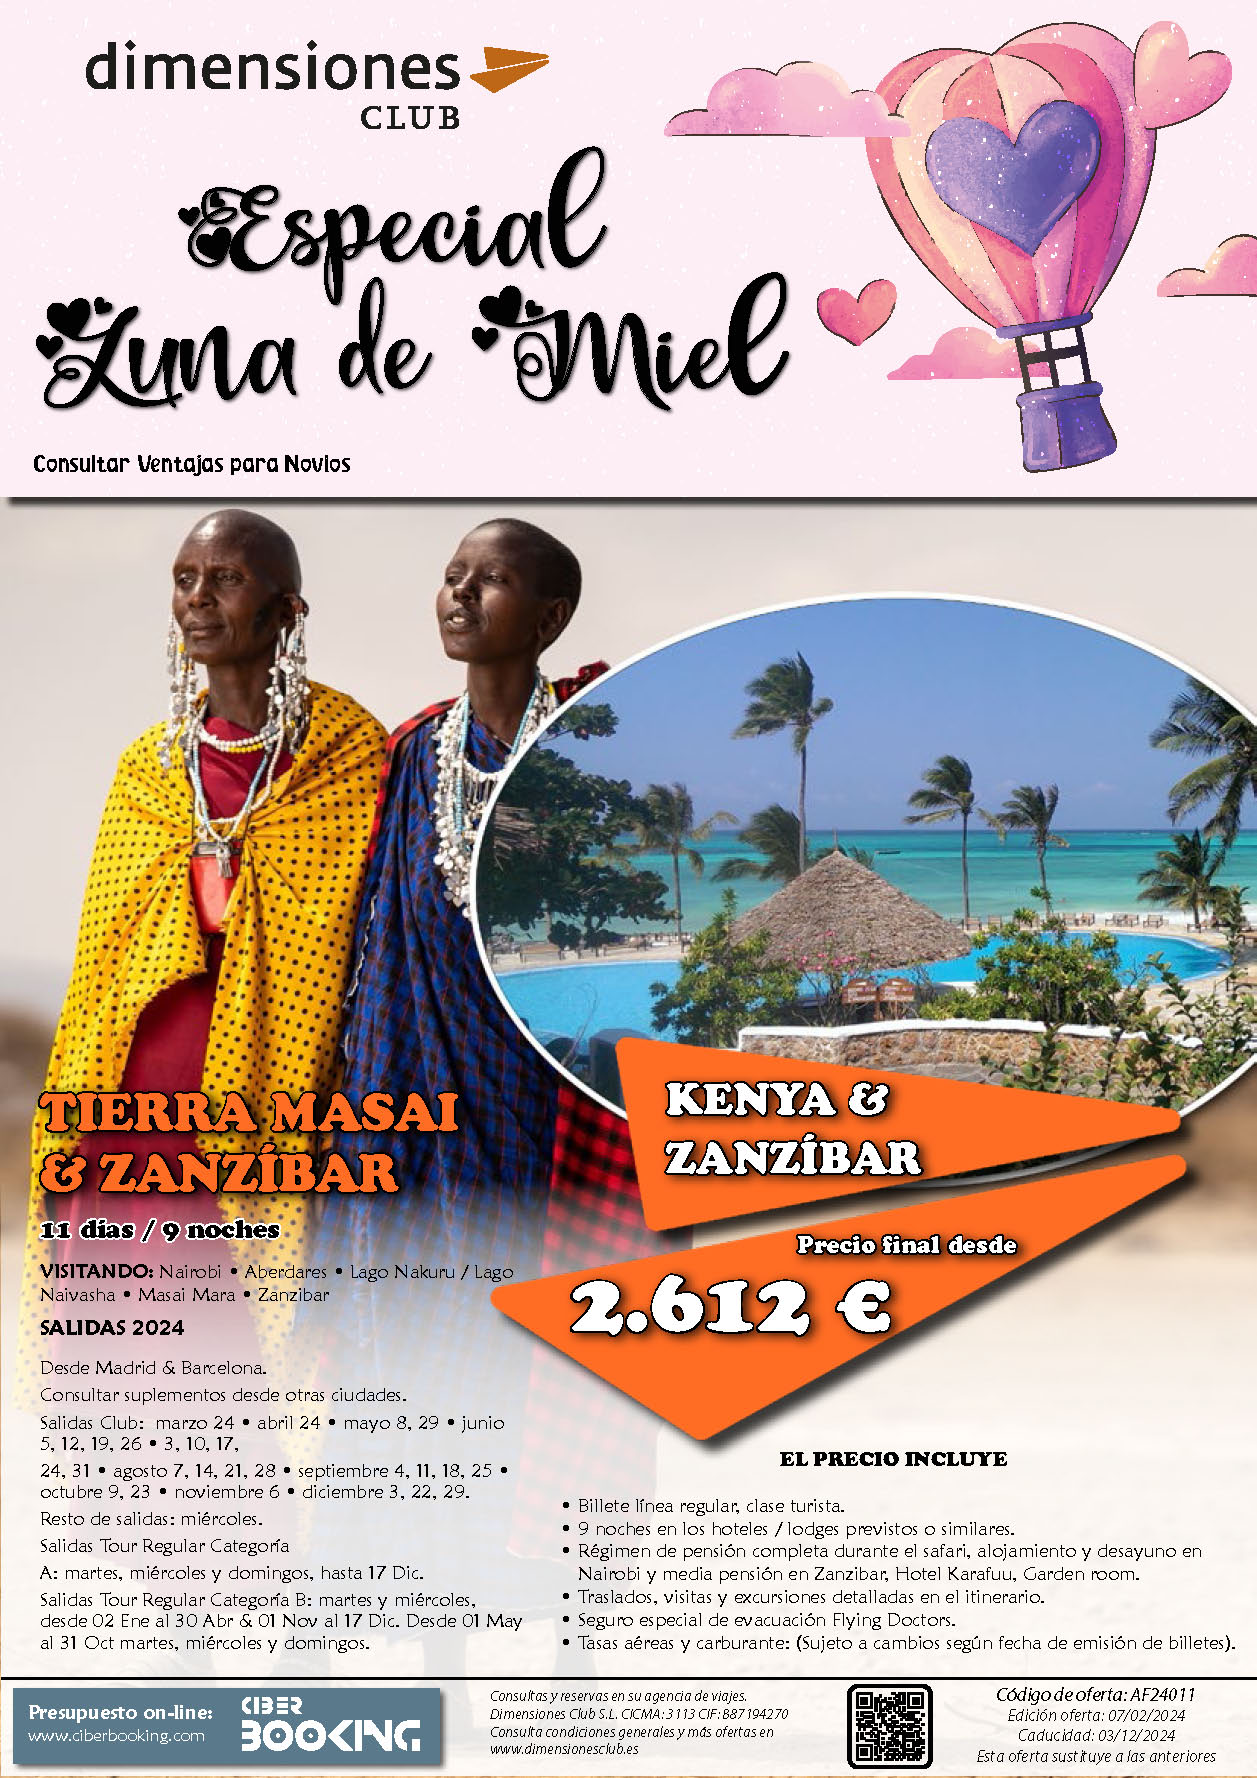 Oferta Dimensiones Club Luna de Miel en Kenia y Zanzibar 11 dias dias salidas Marzo a Diciembre 2024 desde Madrid y Barcelona